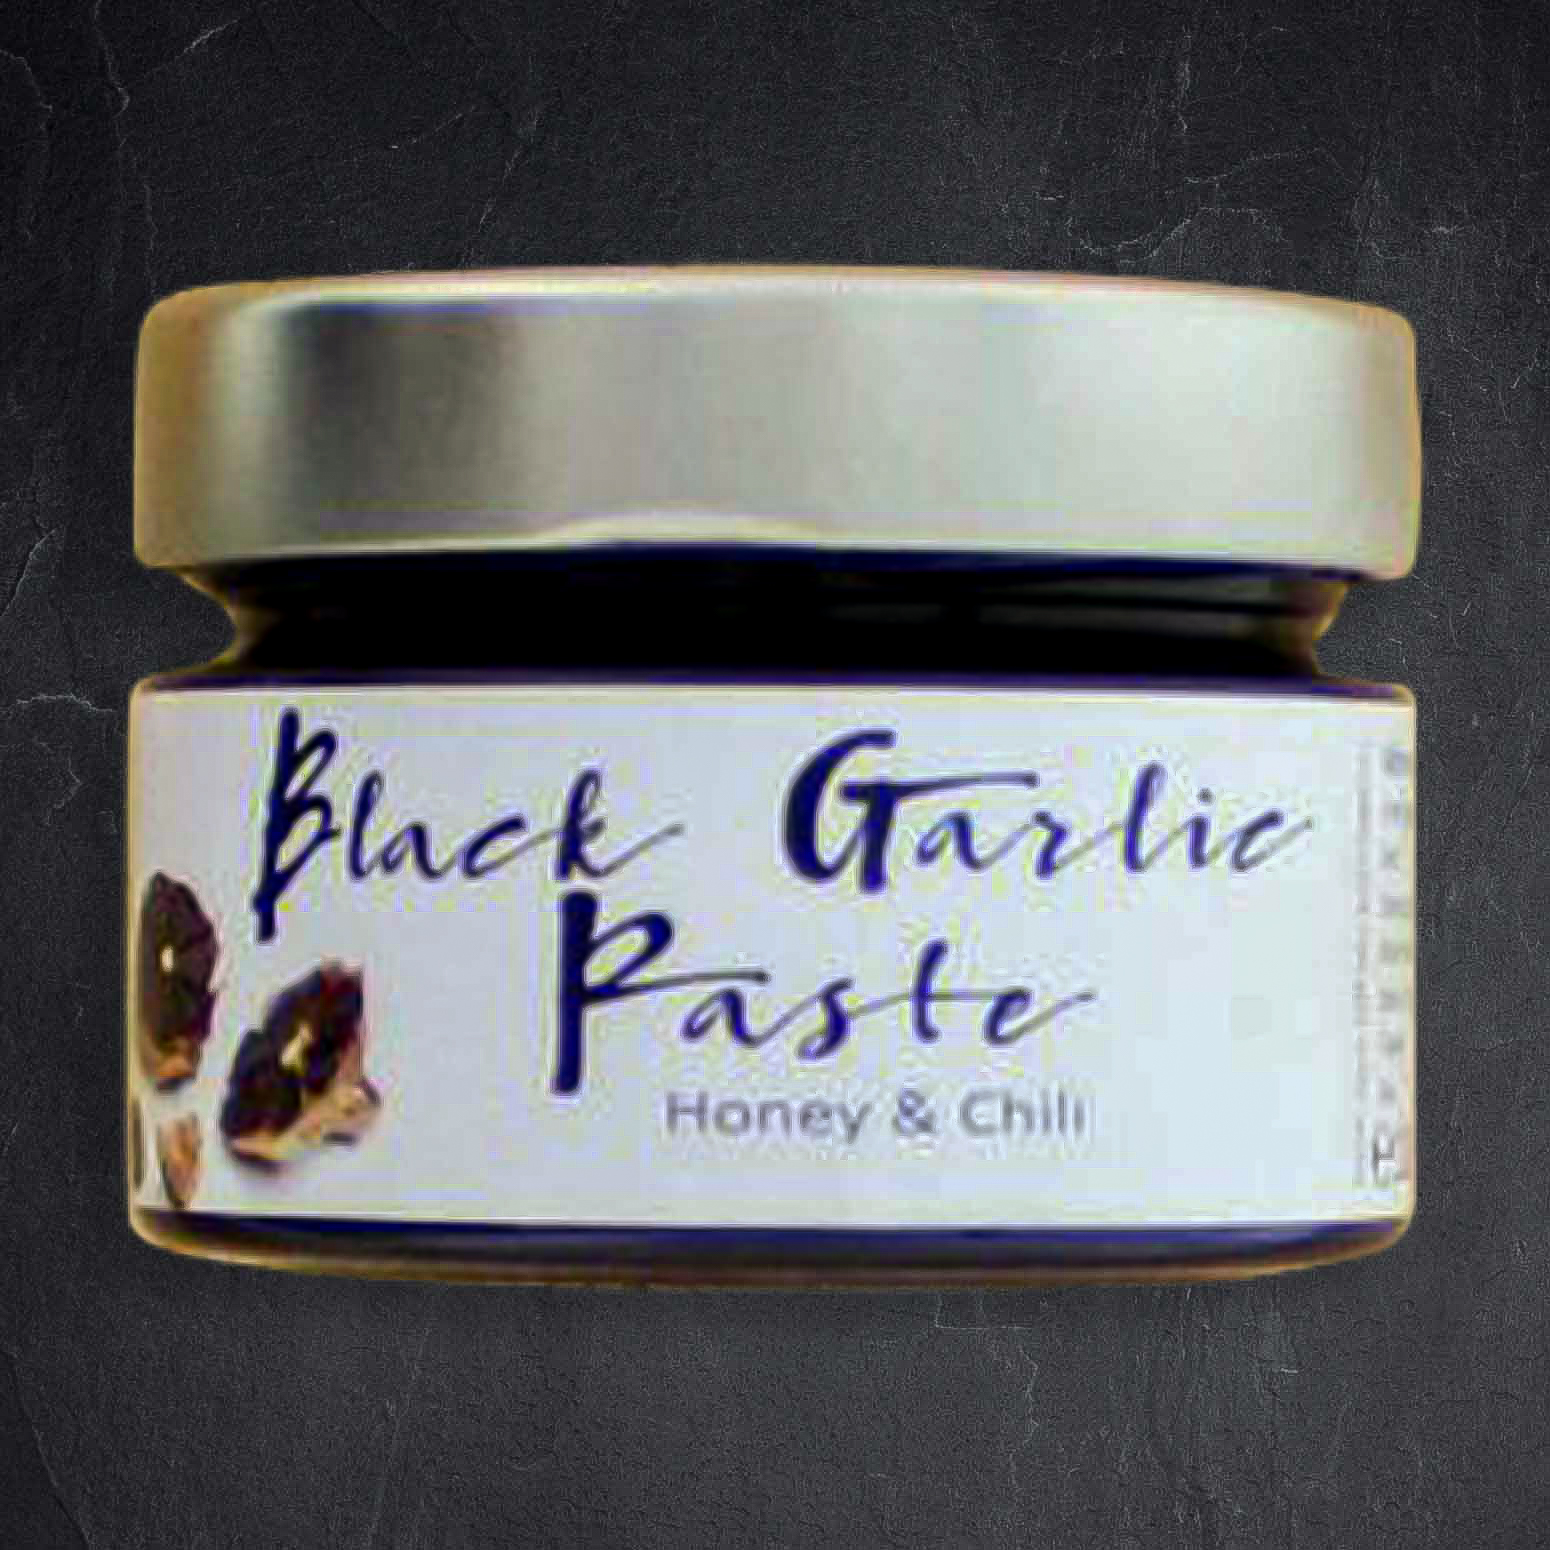 862799_Black_Garlic_Paste_Honig_Chili